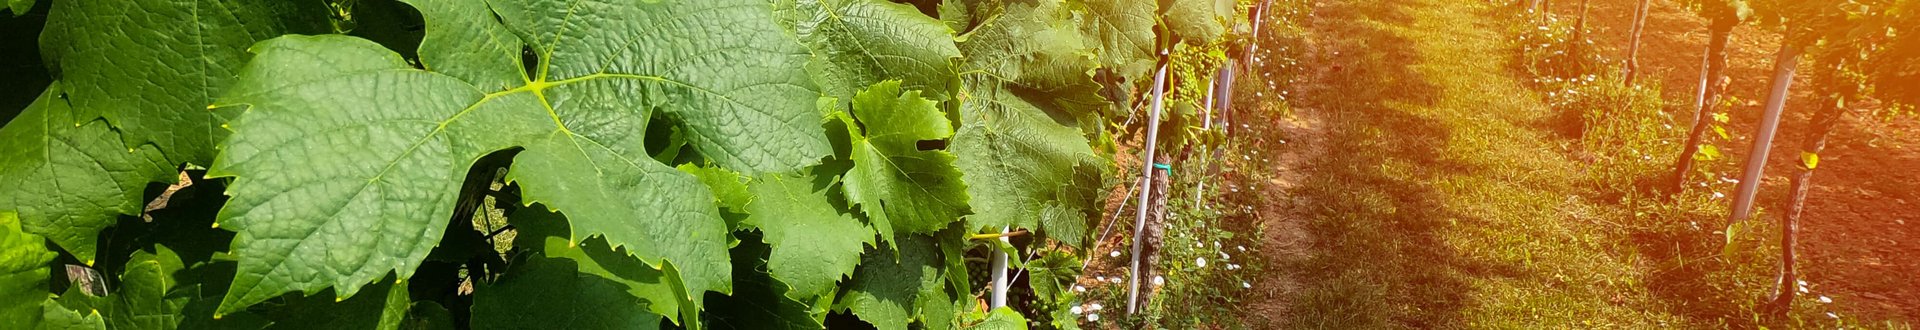 Detailaufnahme von Weinblättern in einer Zeile im Weinberg